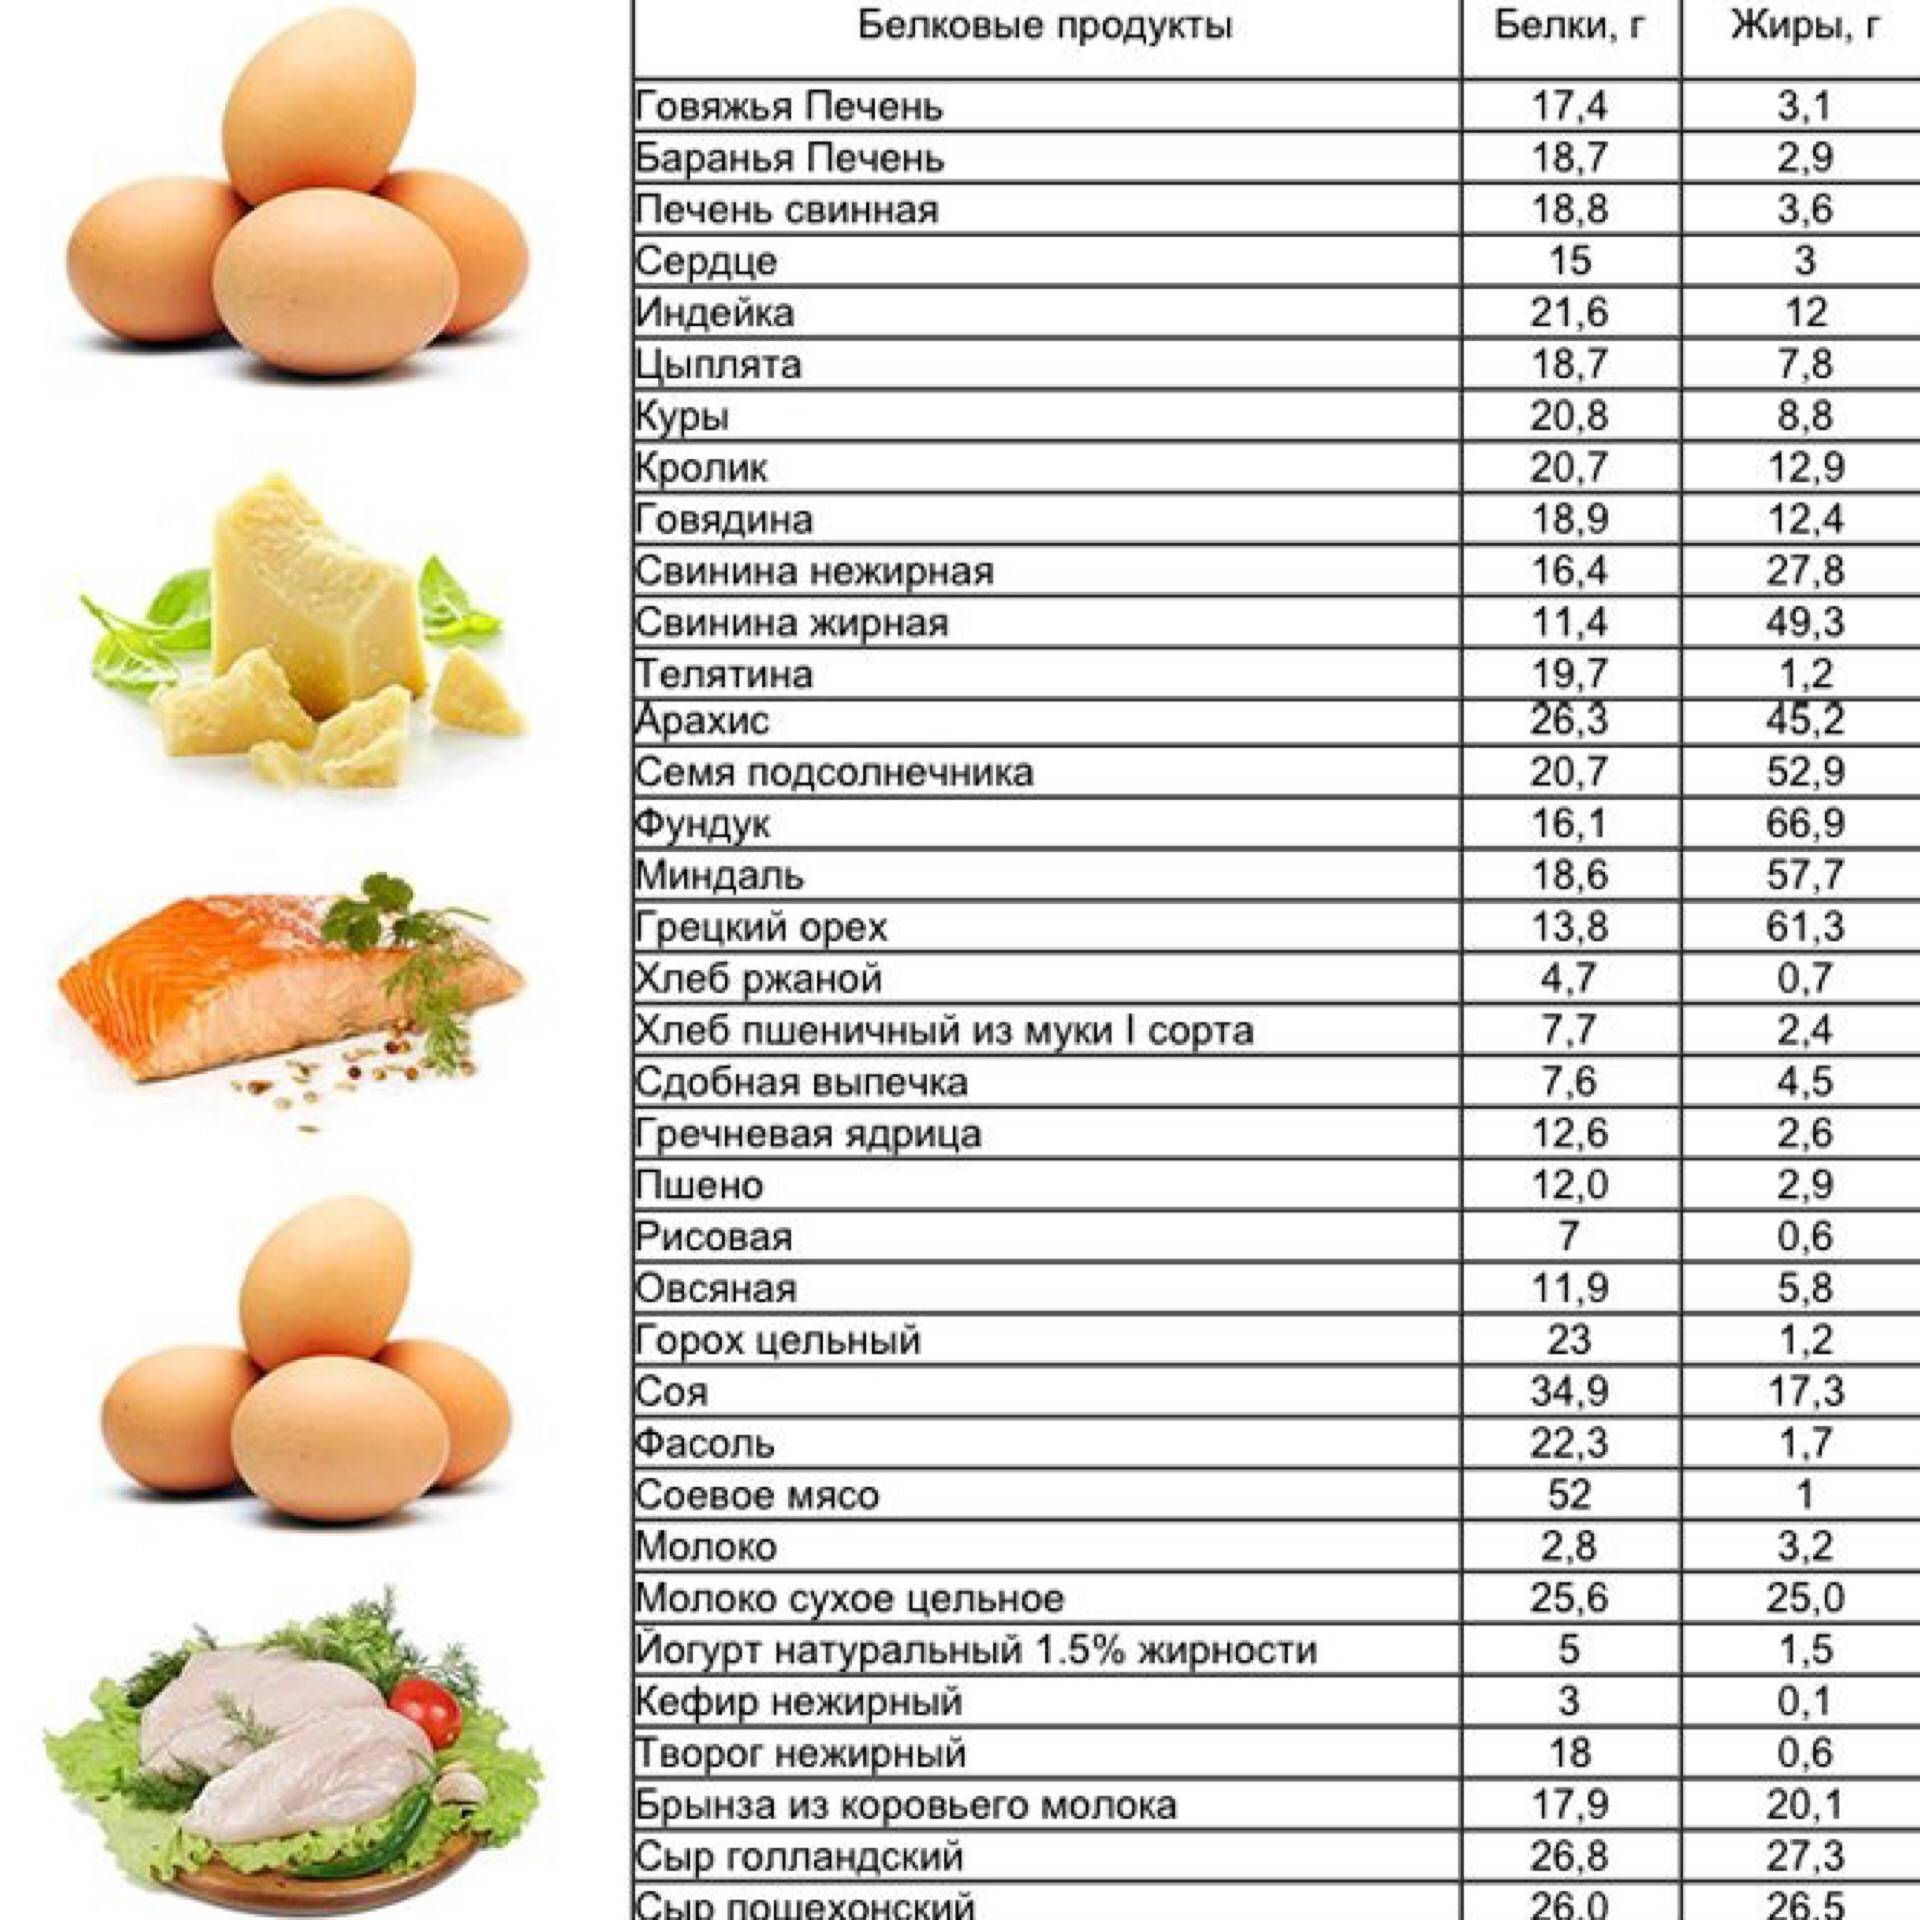 Все, что необходимо знать про продукты, содержащие белок